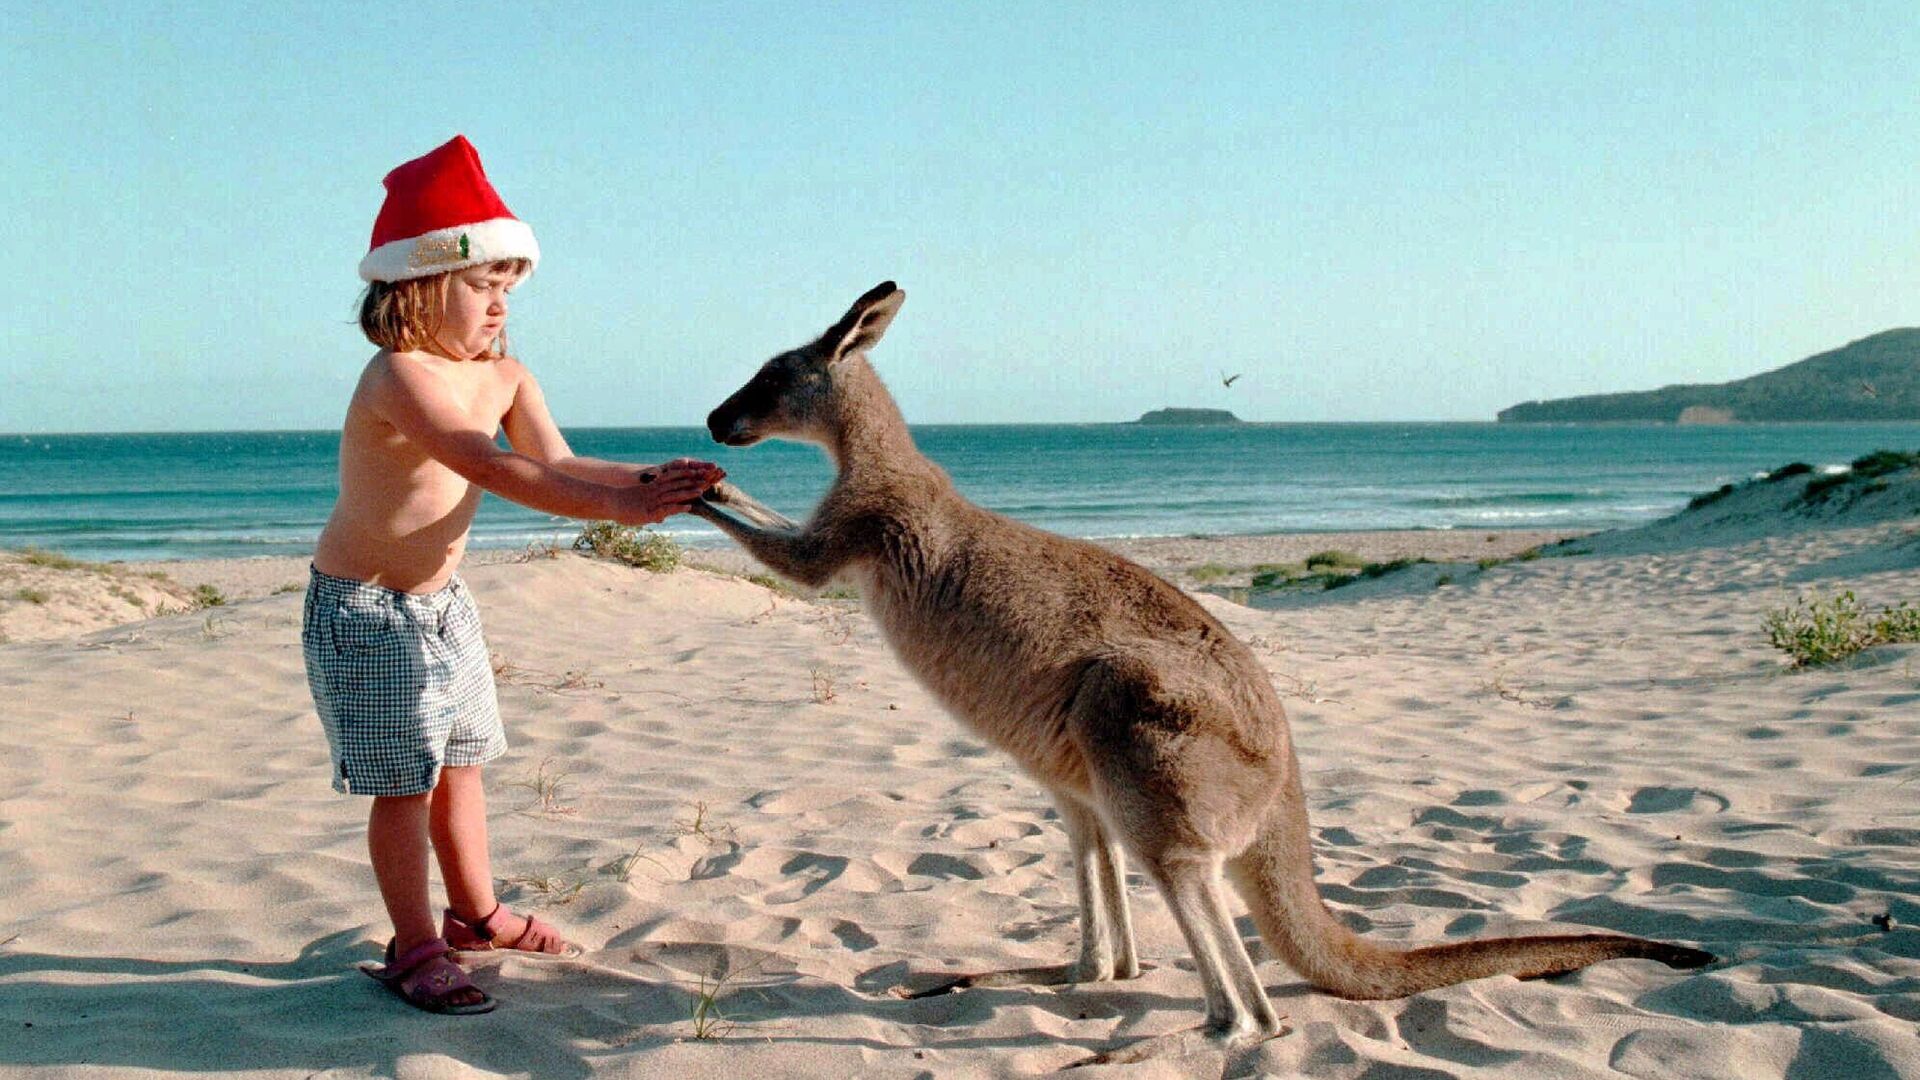 Девочка с кенгуру на пляже к югу от Сиднея, Австралия - РИА Новости, 1920, 06.12.2019